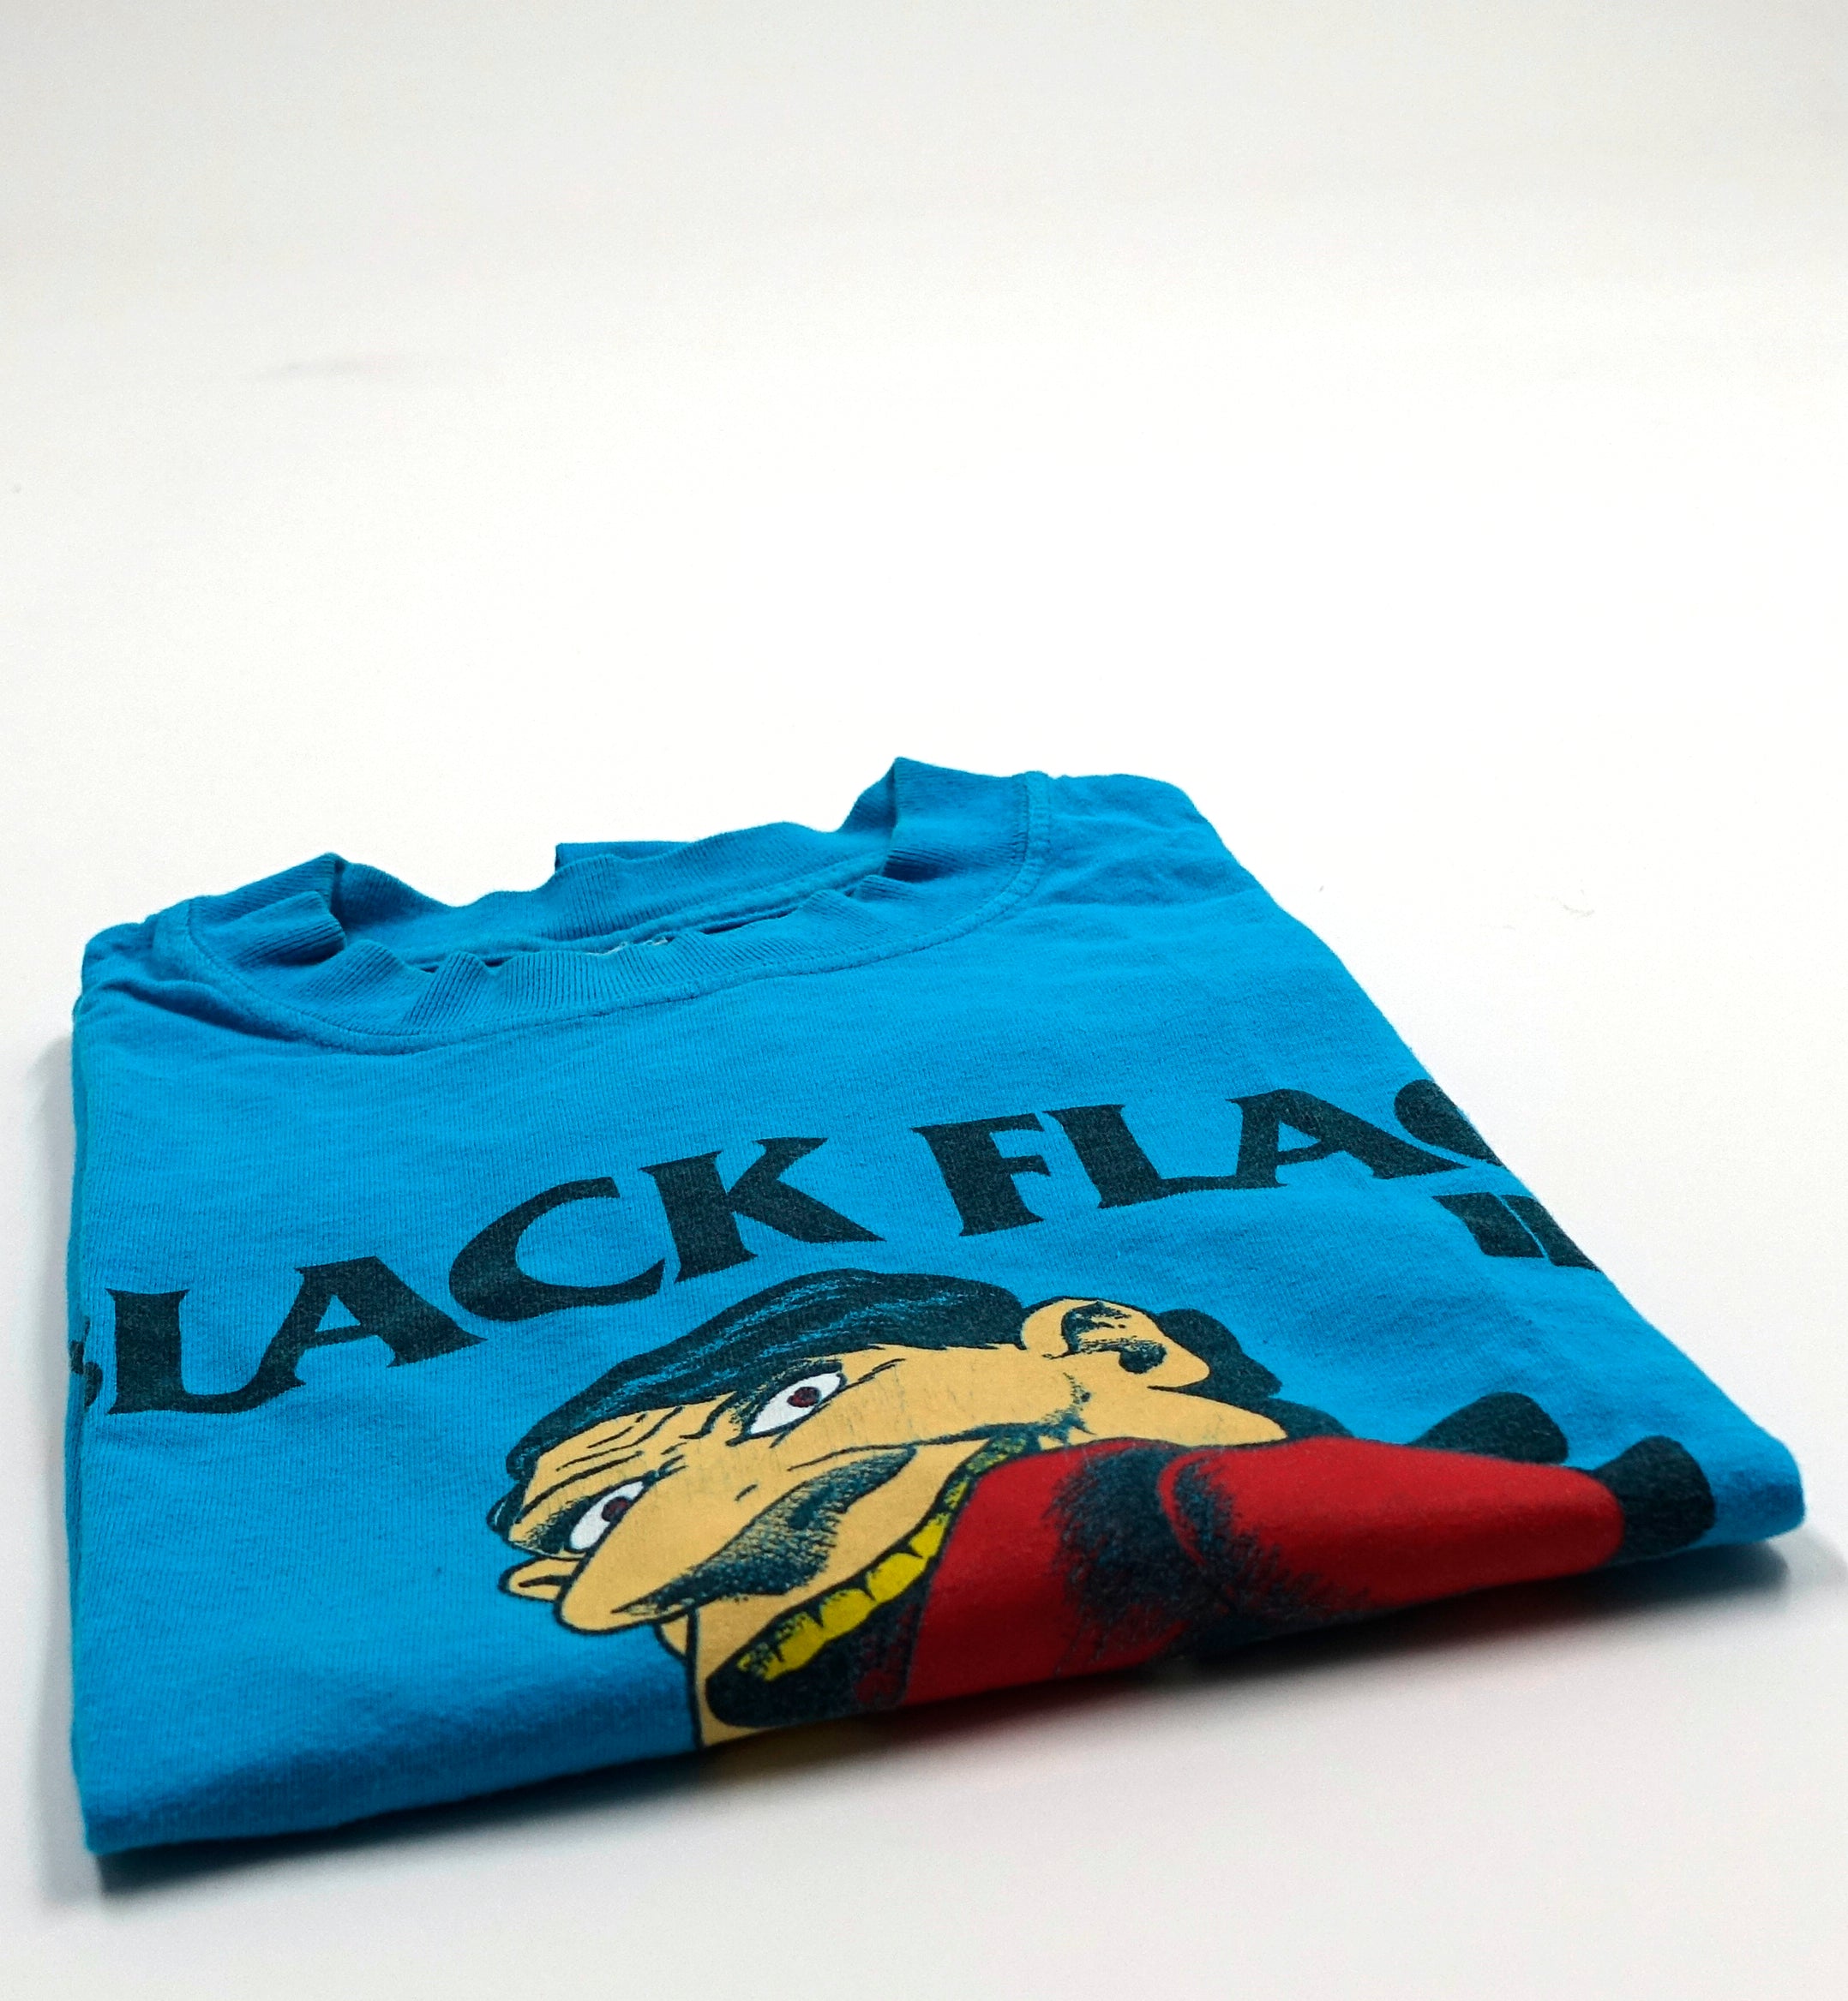 Black Flag - My War 90's SST Mailorder Shirt Size Large